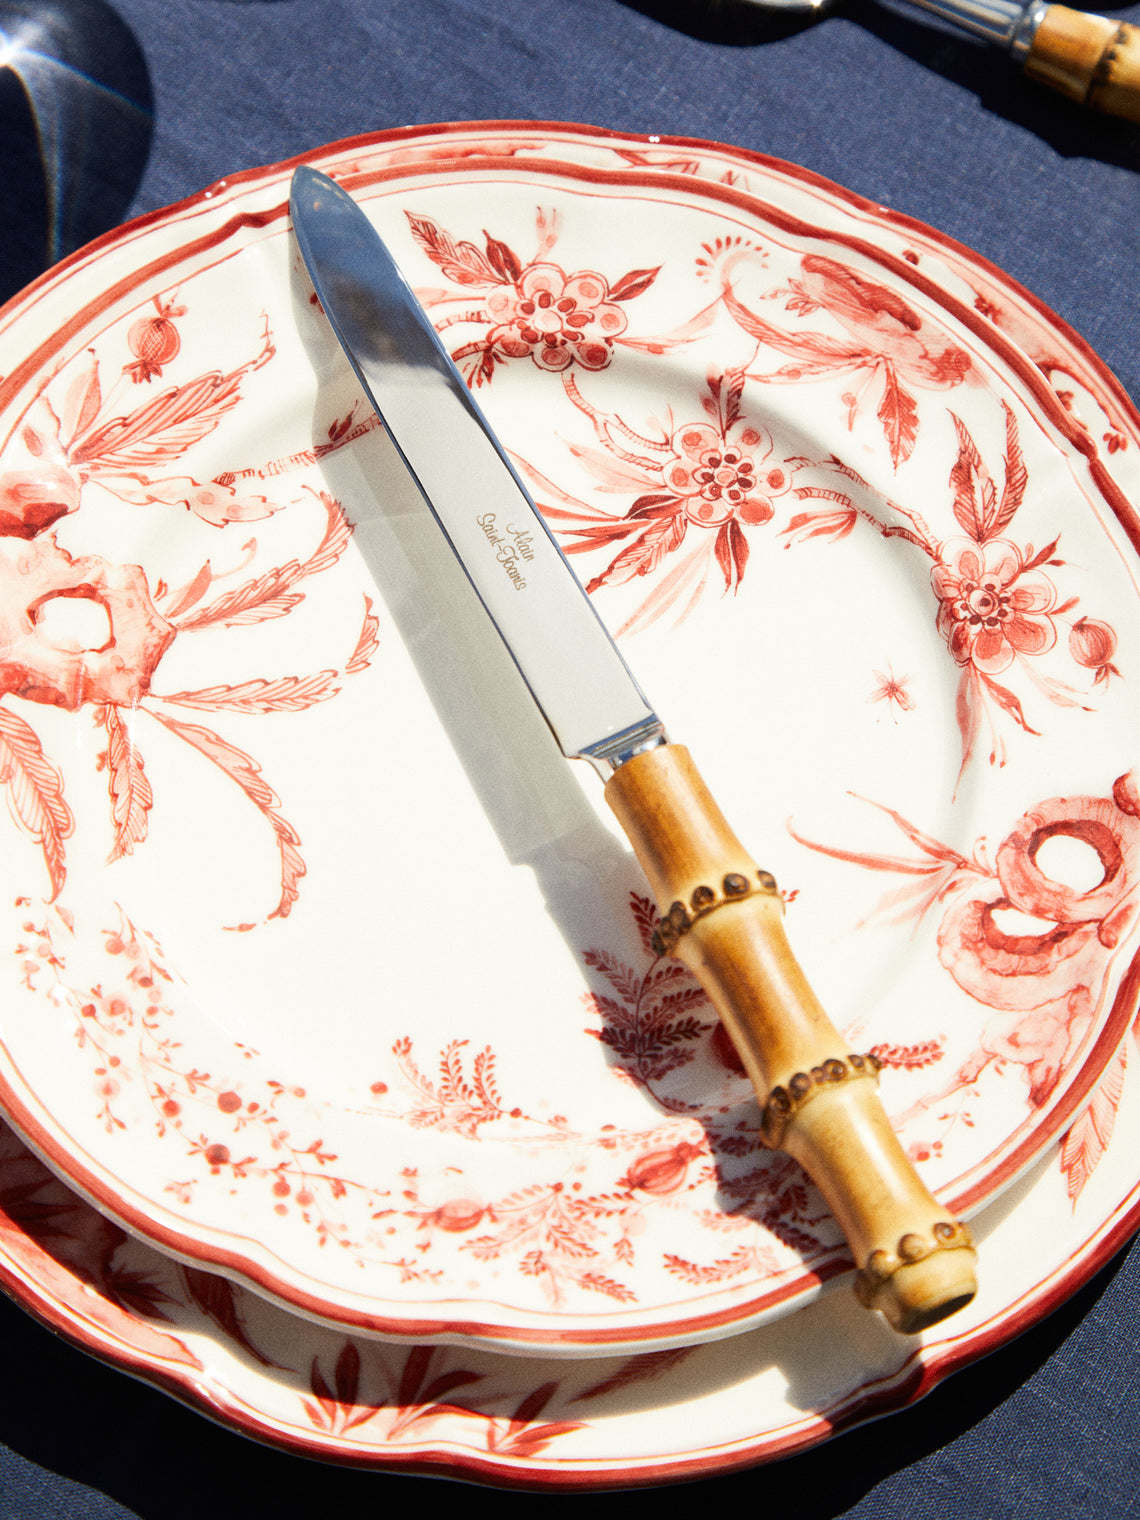 Alain Saint-Joanis - Bamboo Dinner Knife - Brown - ABASK